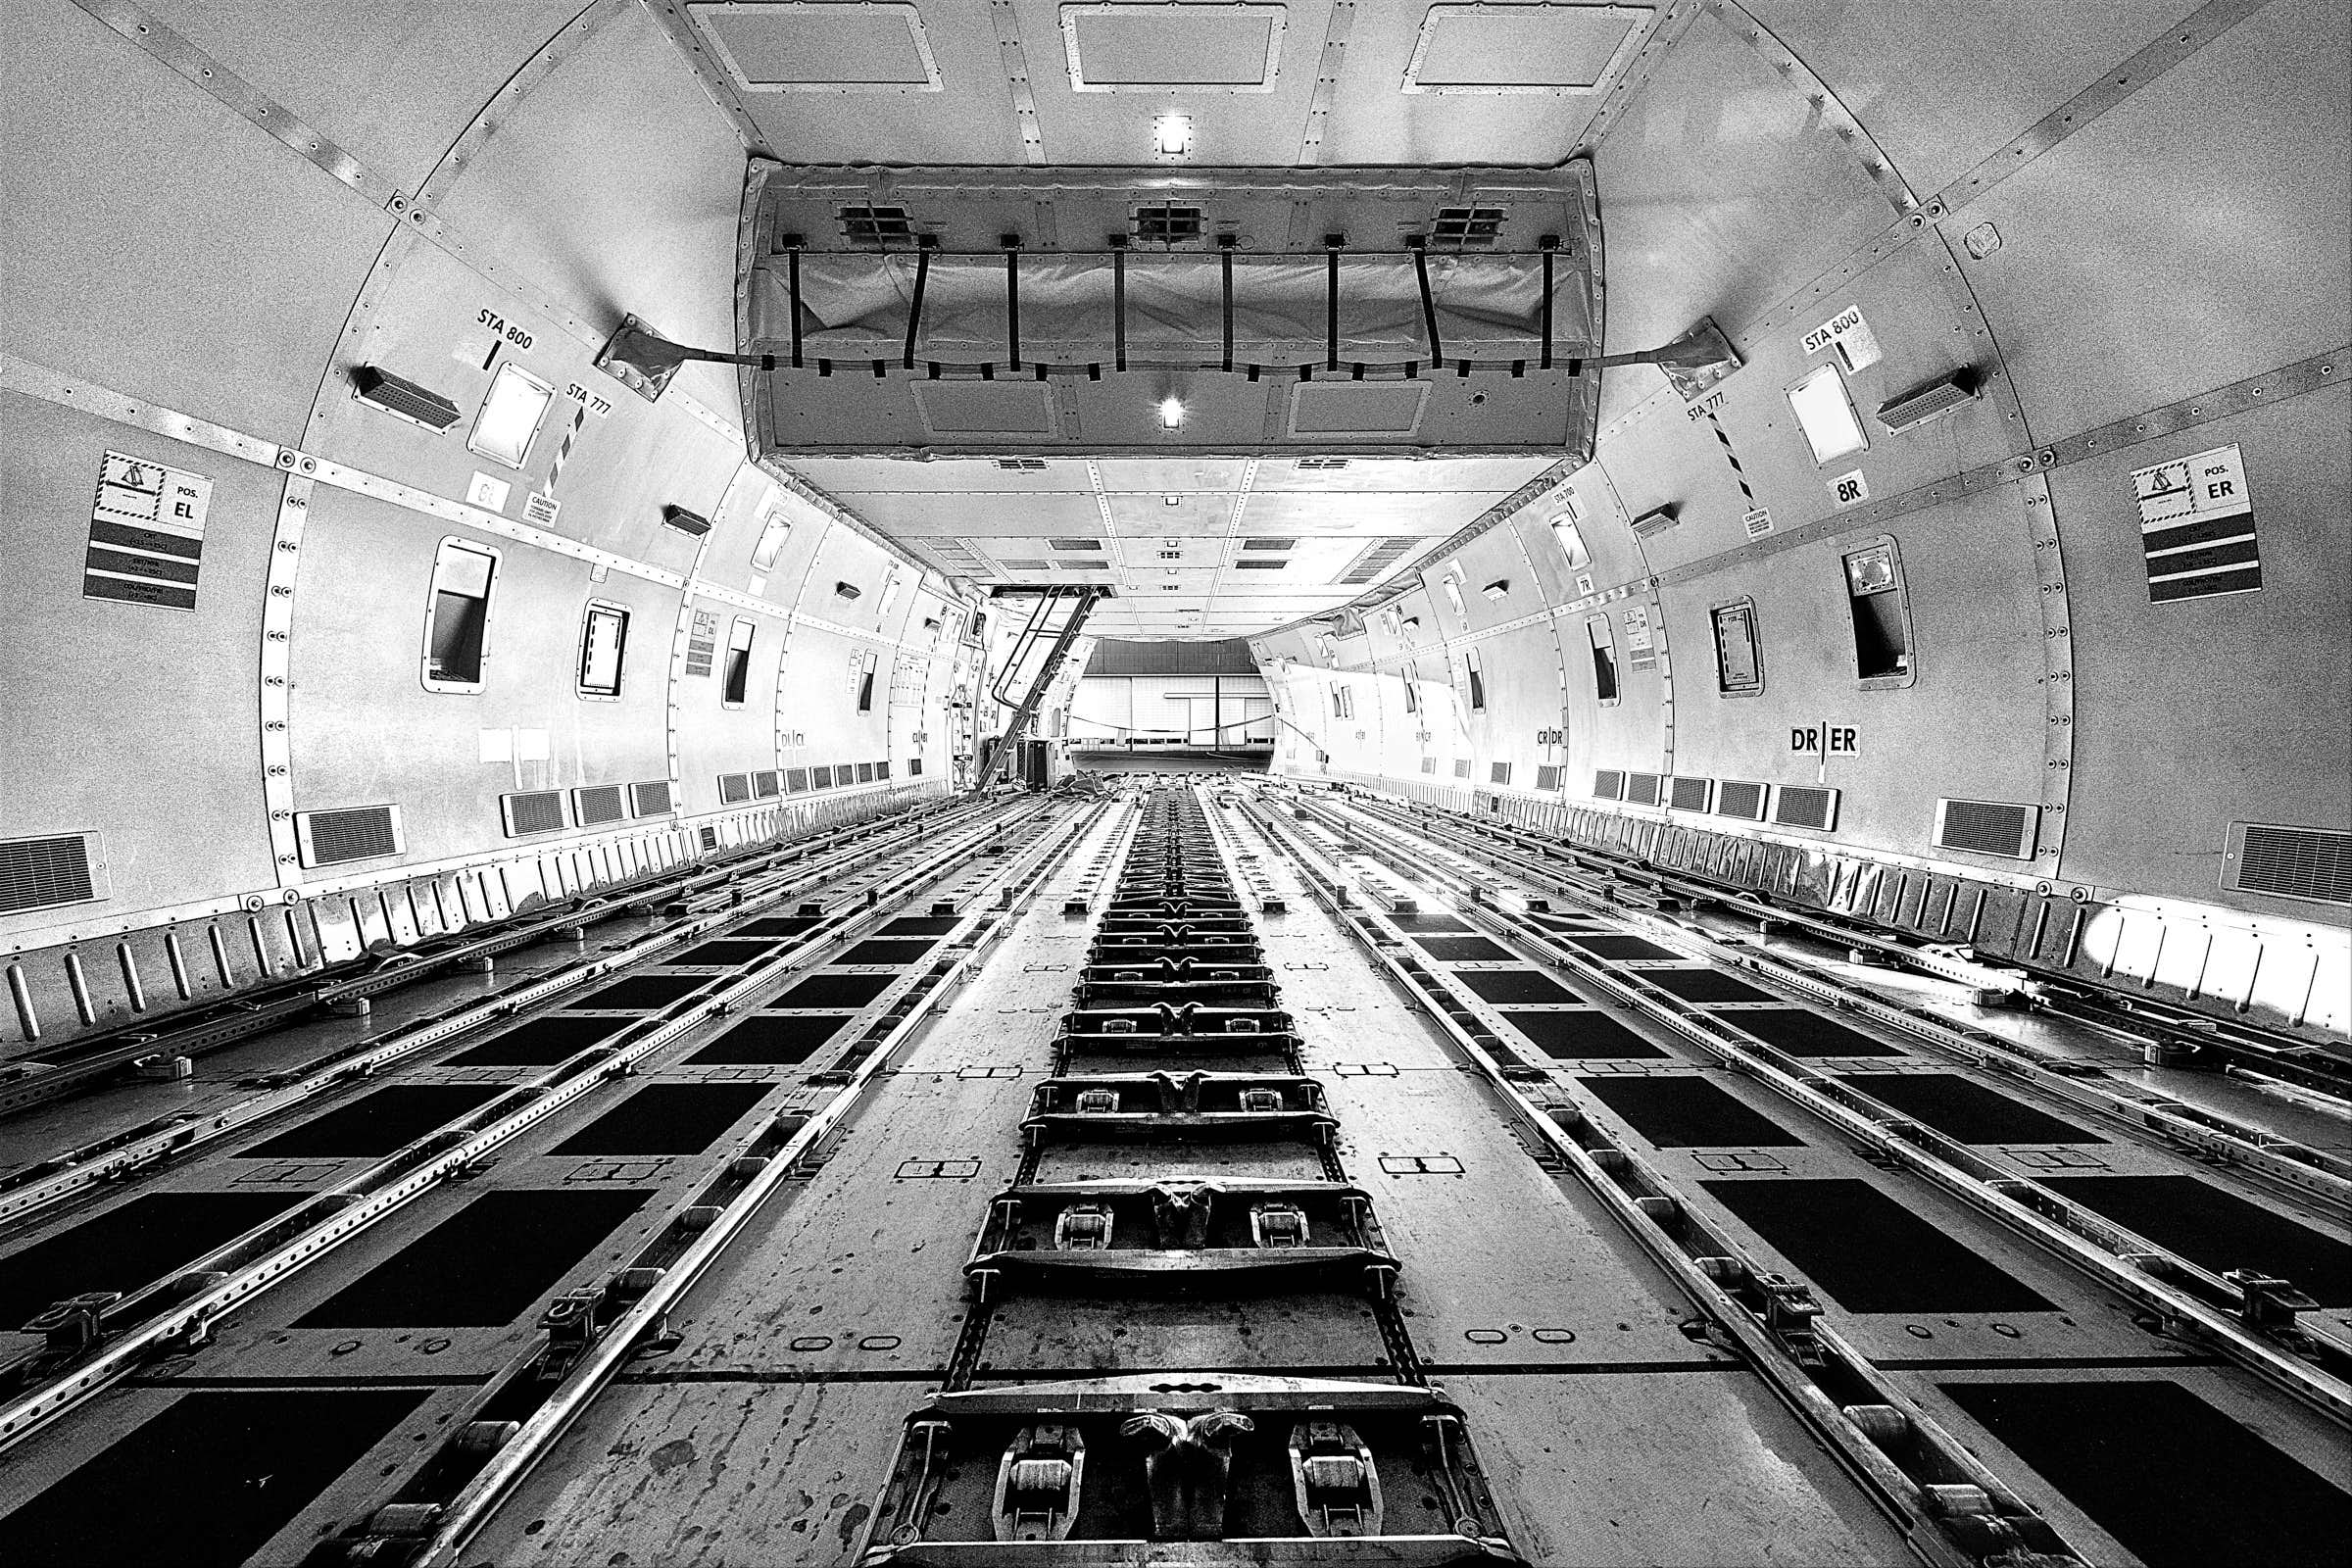 innenraum-von-leerem-frachtflugzeug-am-flughafen-in-schwarz-weiß